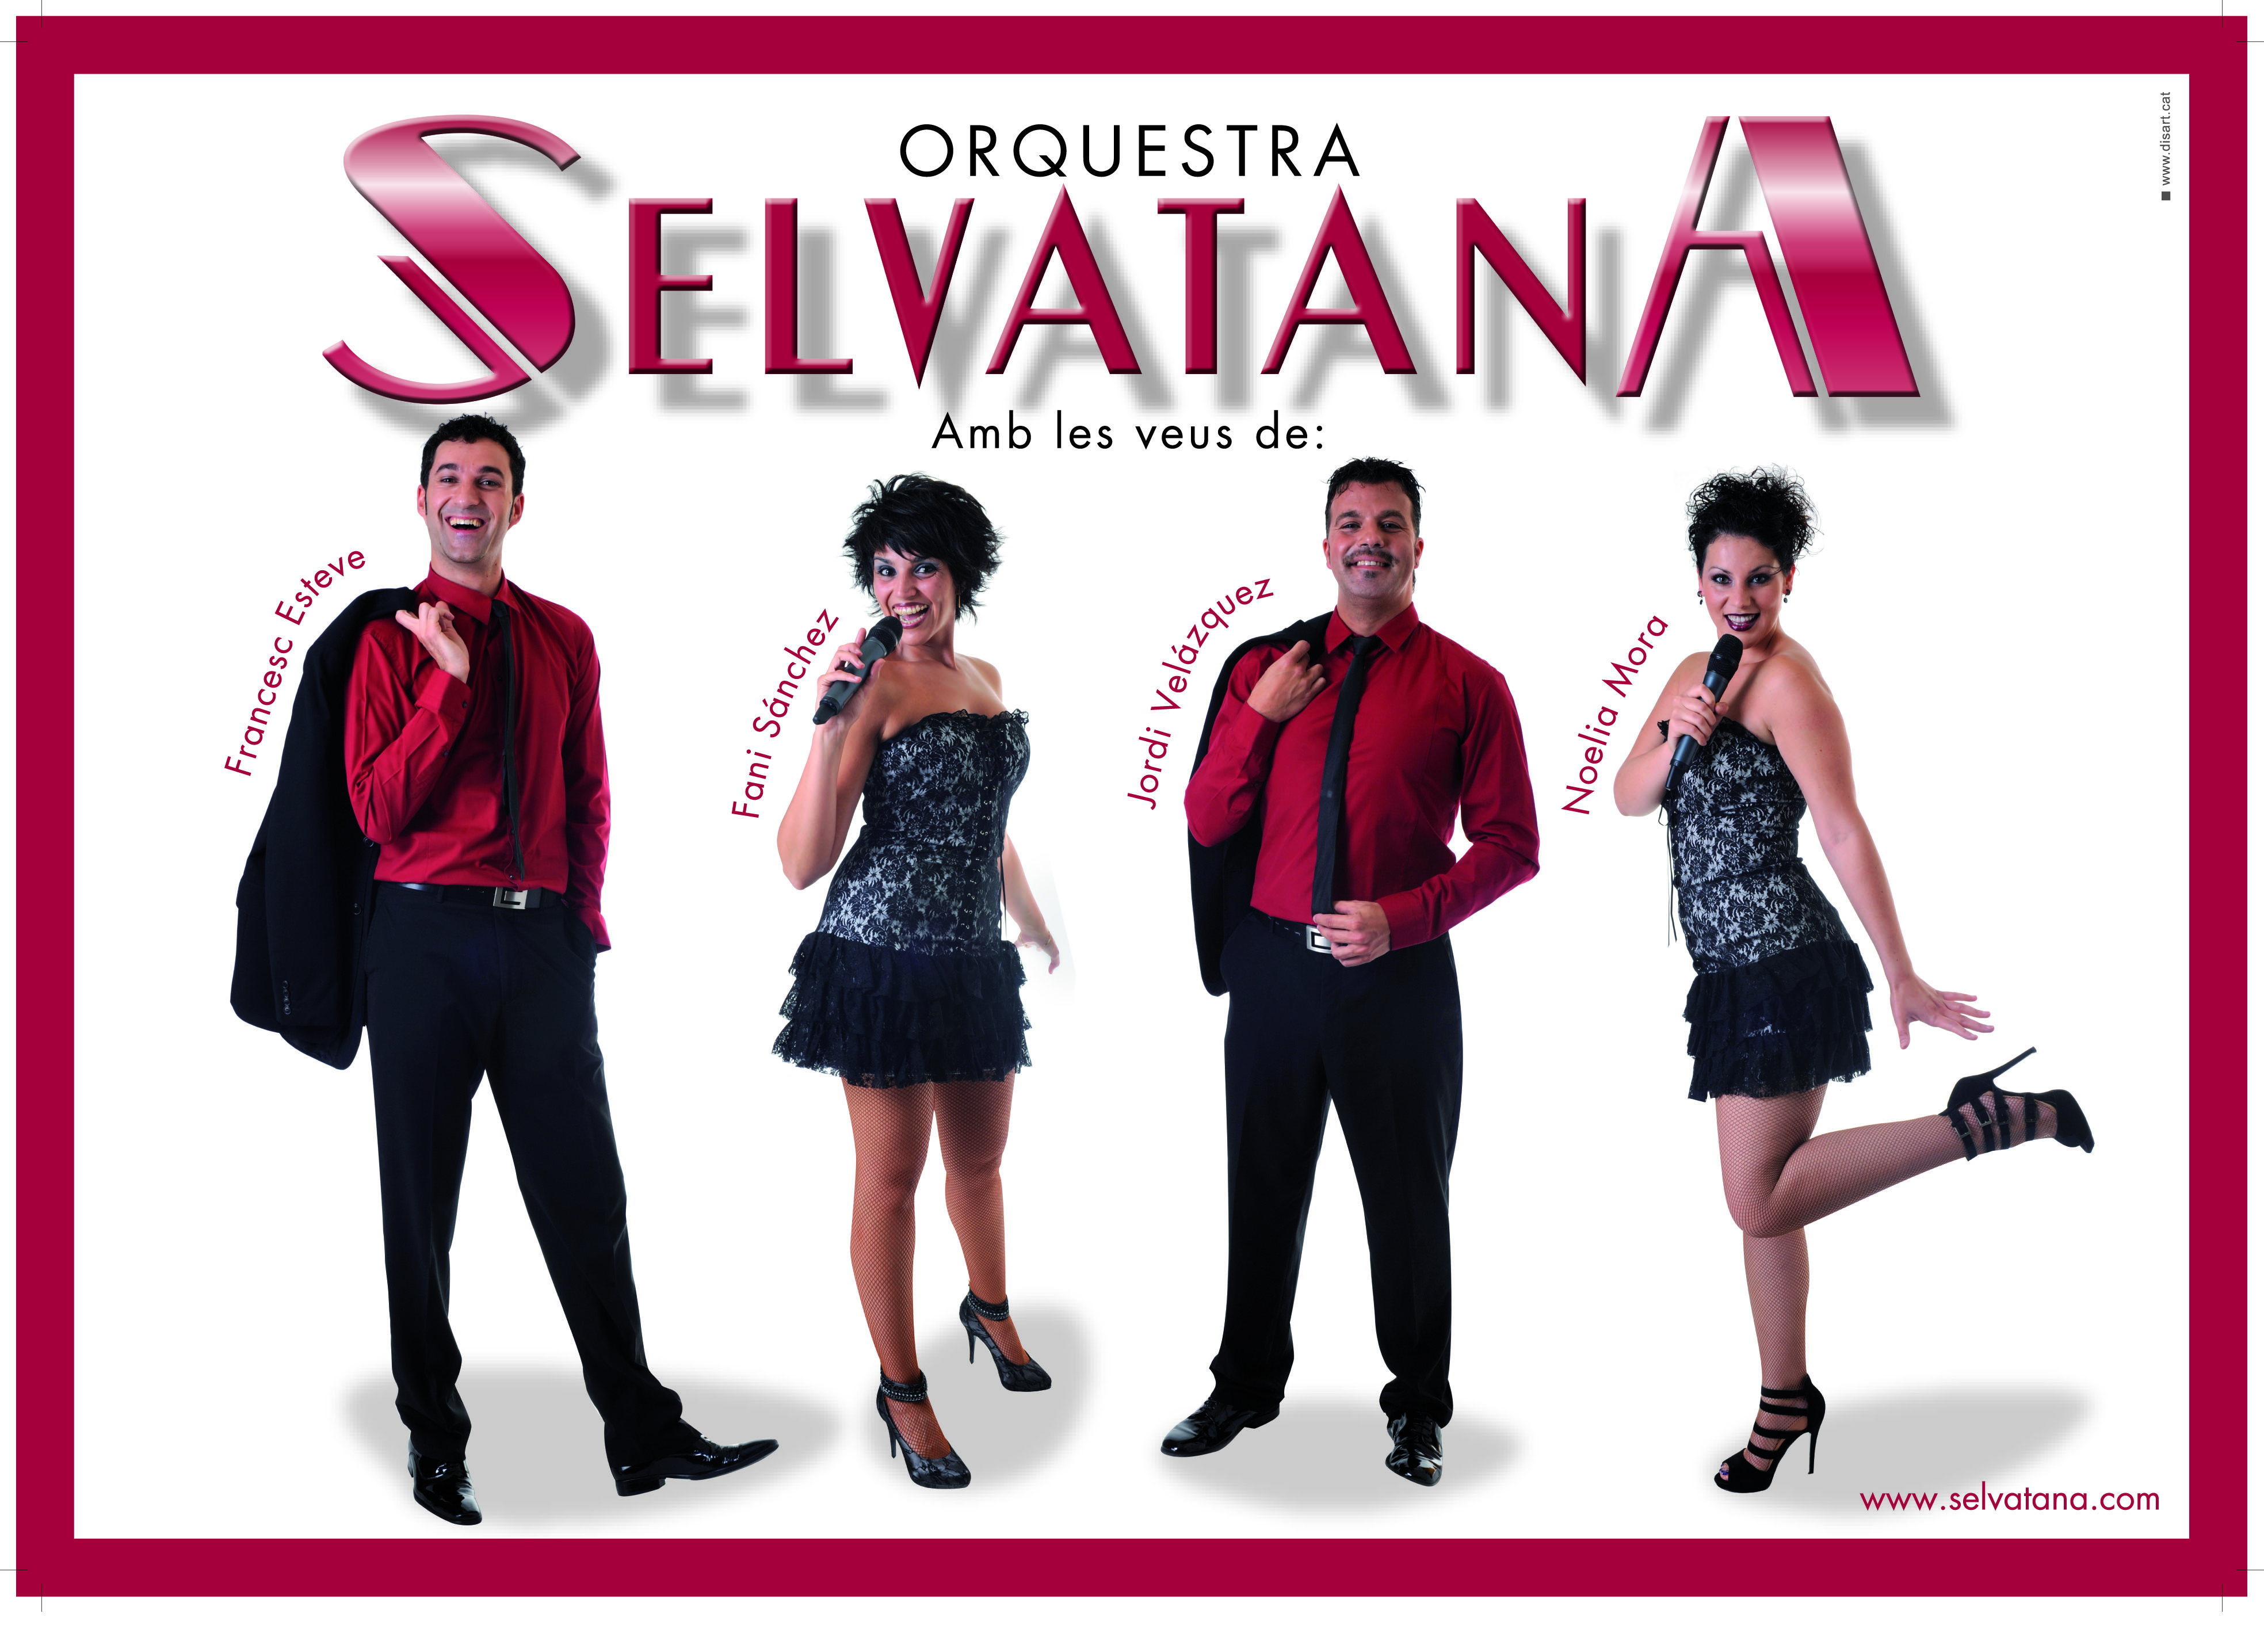 ORQUESTRA SELVATANA – Concert més enllà dels somnis